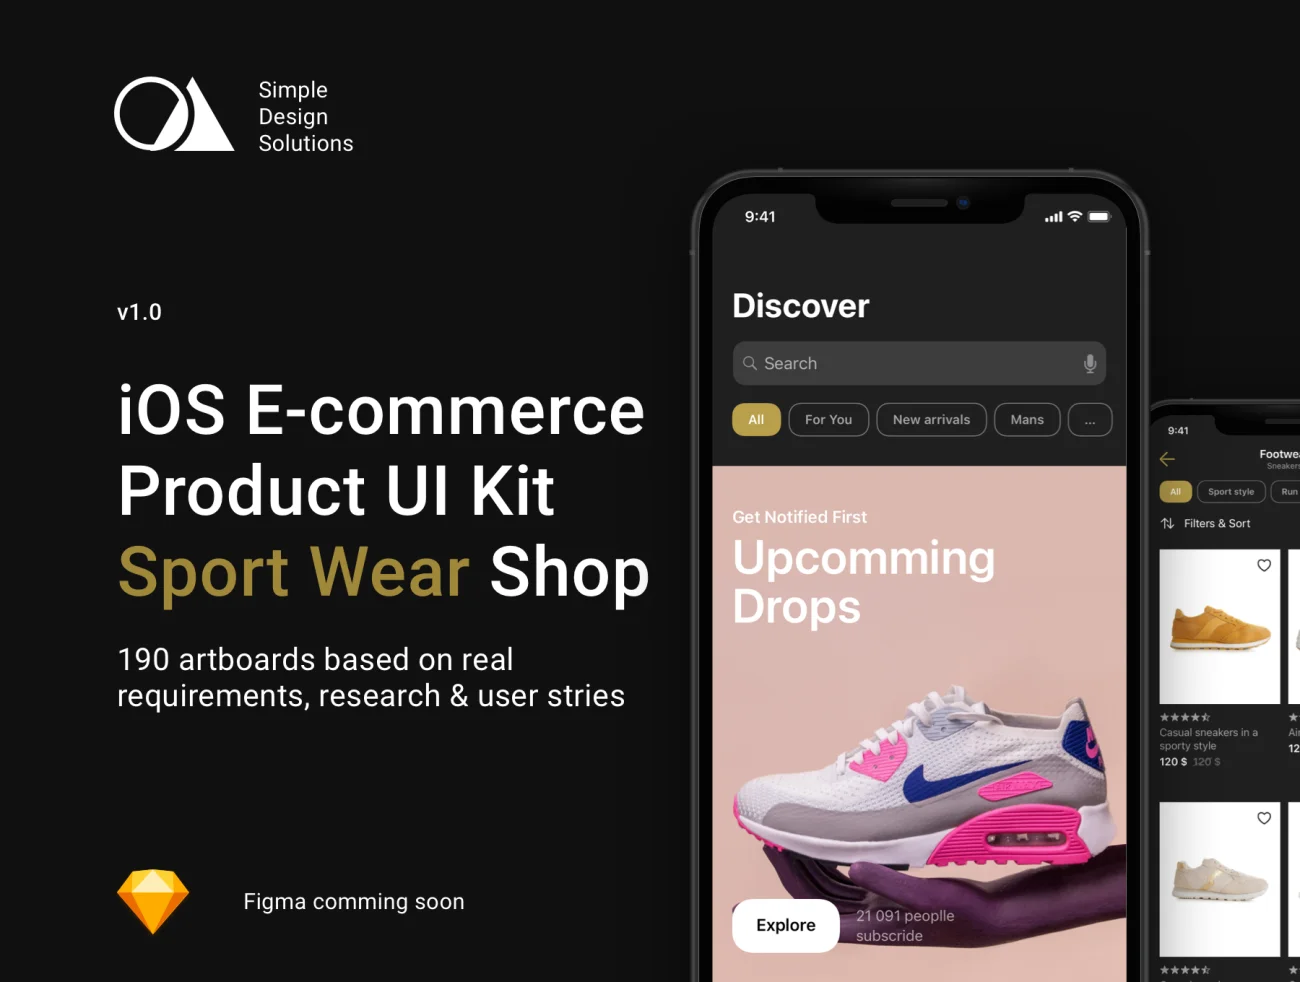 潮流运动服饰电商应用UI设计套件 iOS E-commerce Product UI Kit-UI/UX、ui套件、主页、介绍、付款、应用、注册、电子钱包、社交、网购、详情-到位啦UI